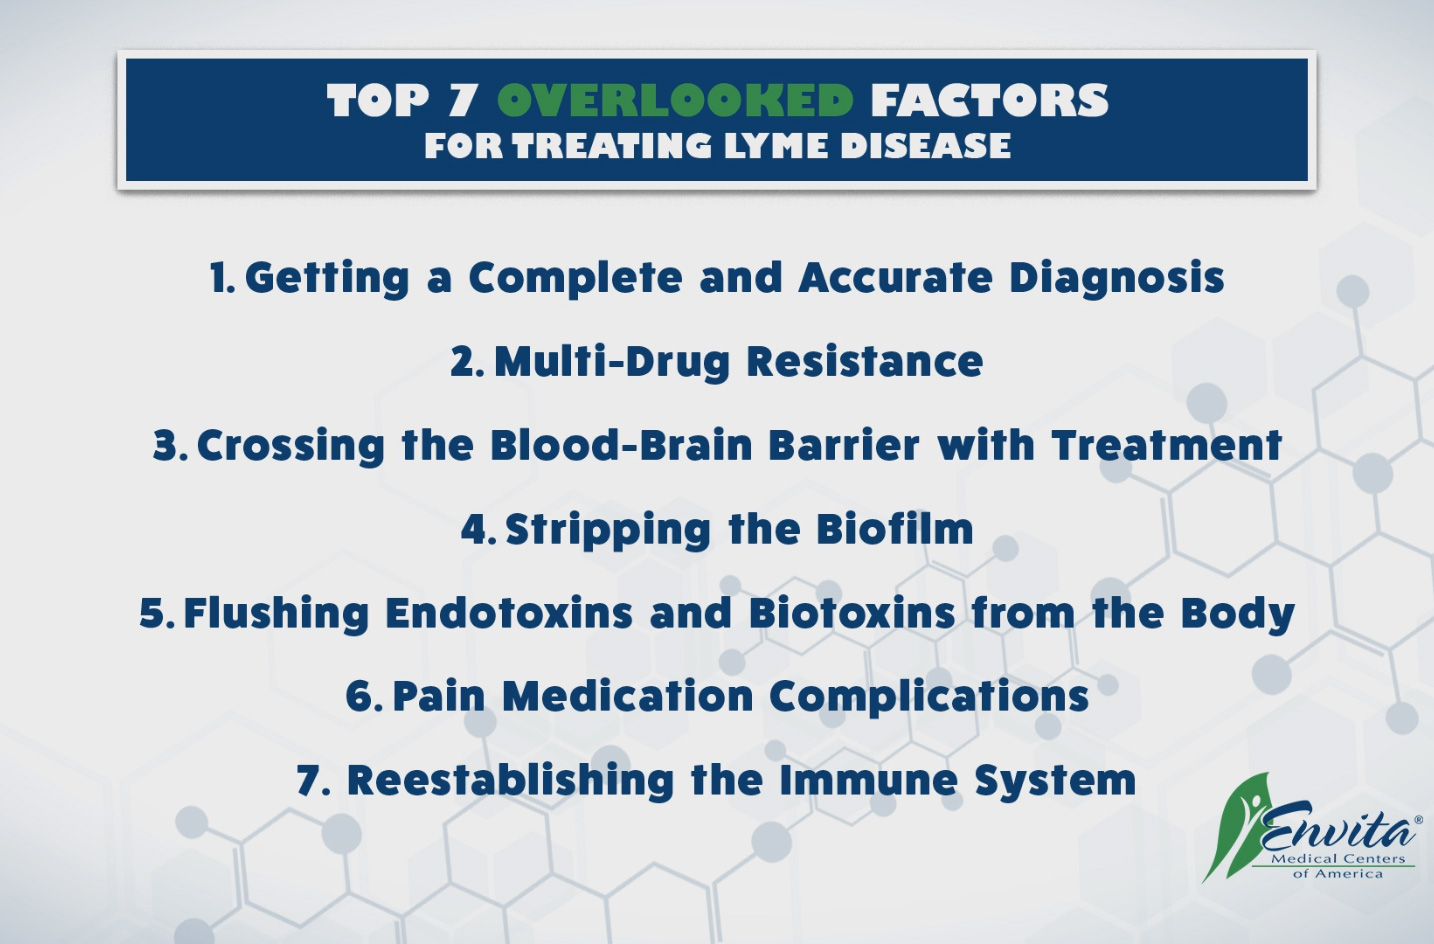 Top 7 overlooked factors of treating Lyme Disease